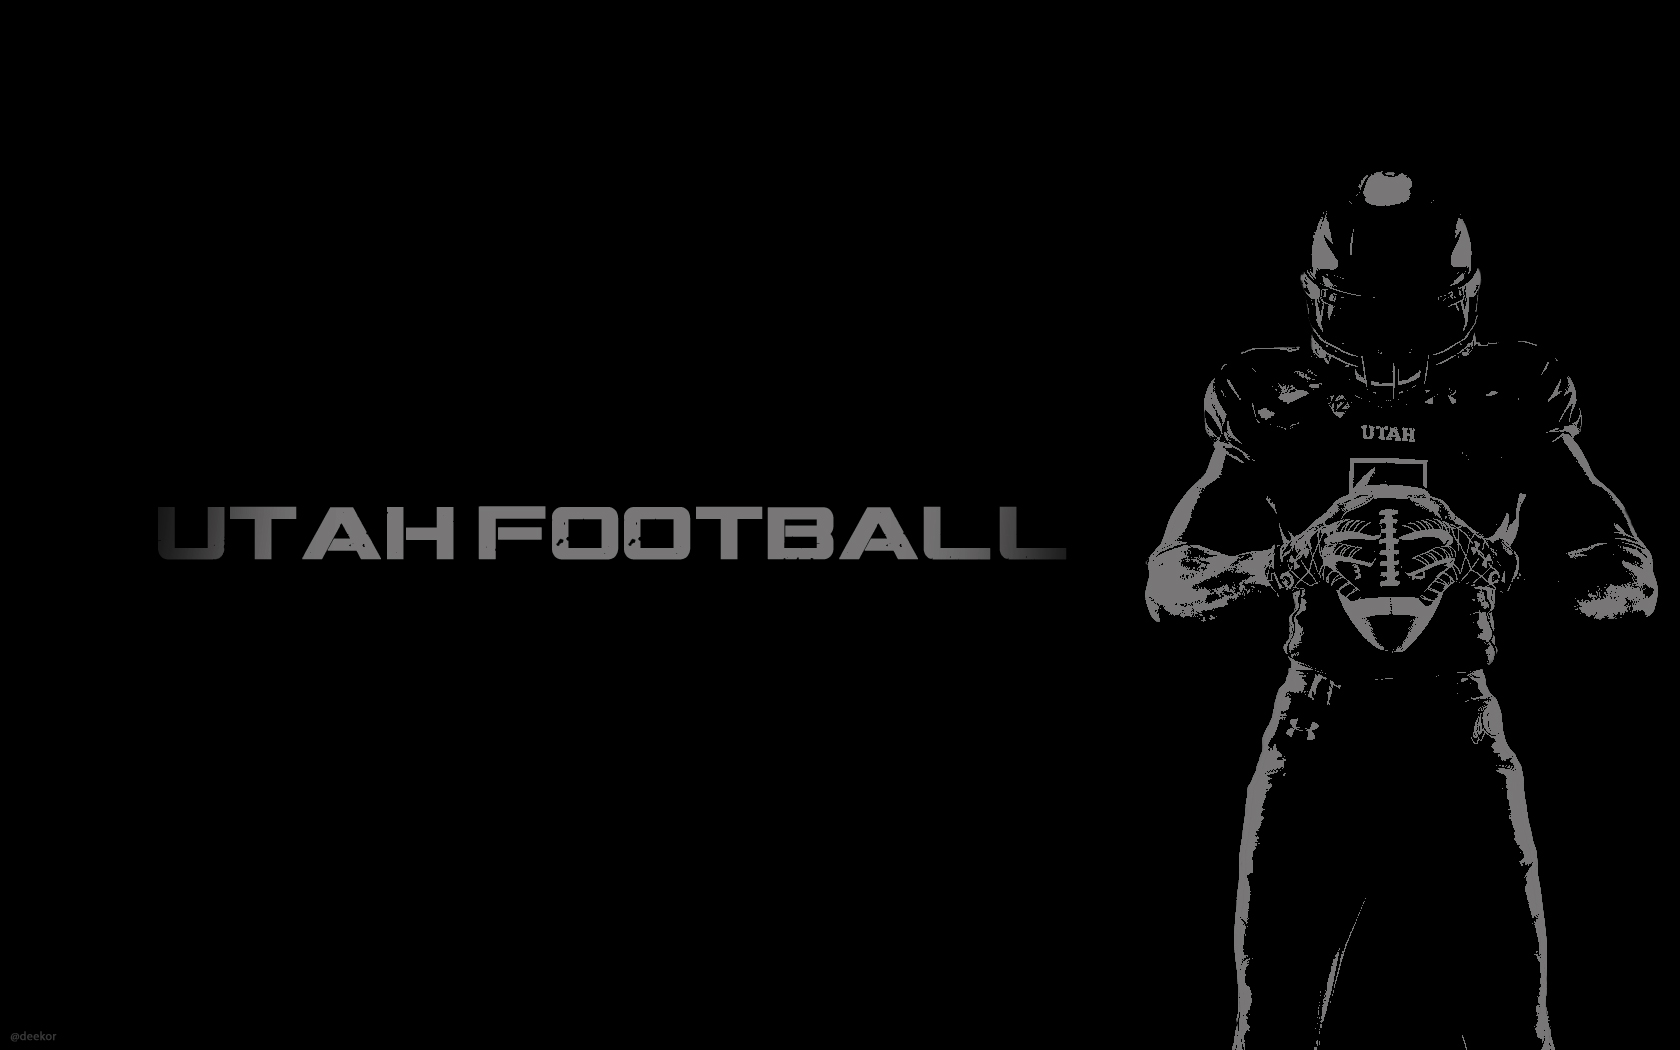 Utah Football Wallpaper Deekorcom